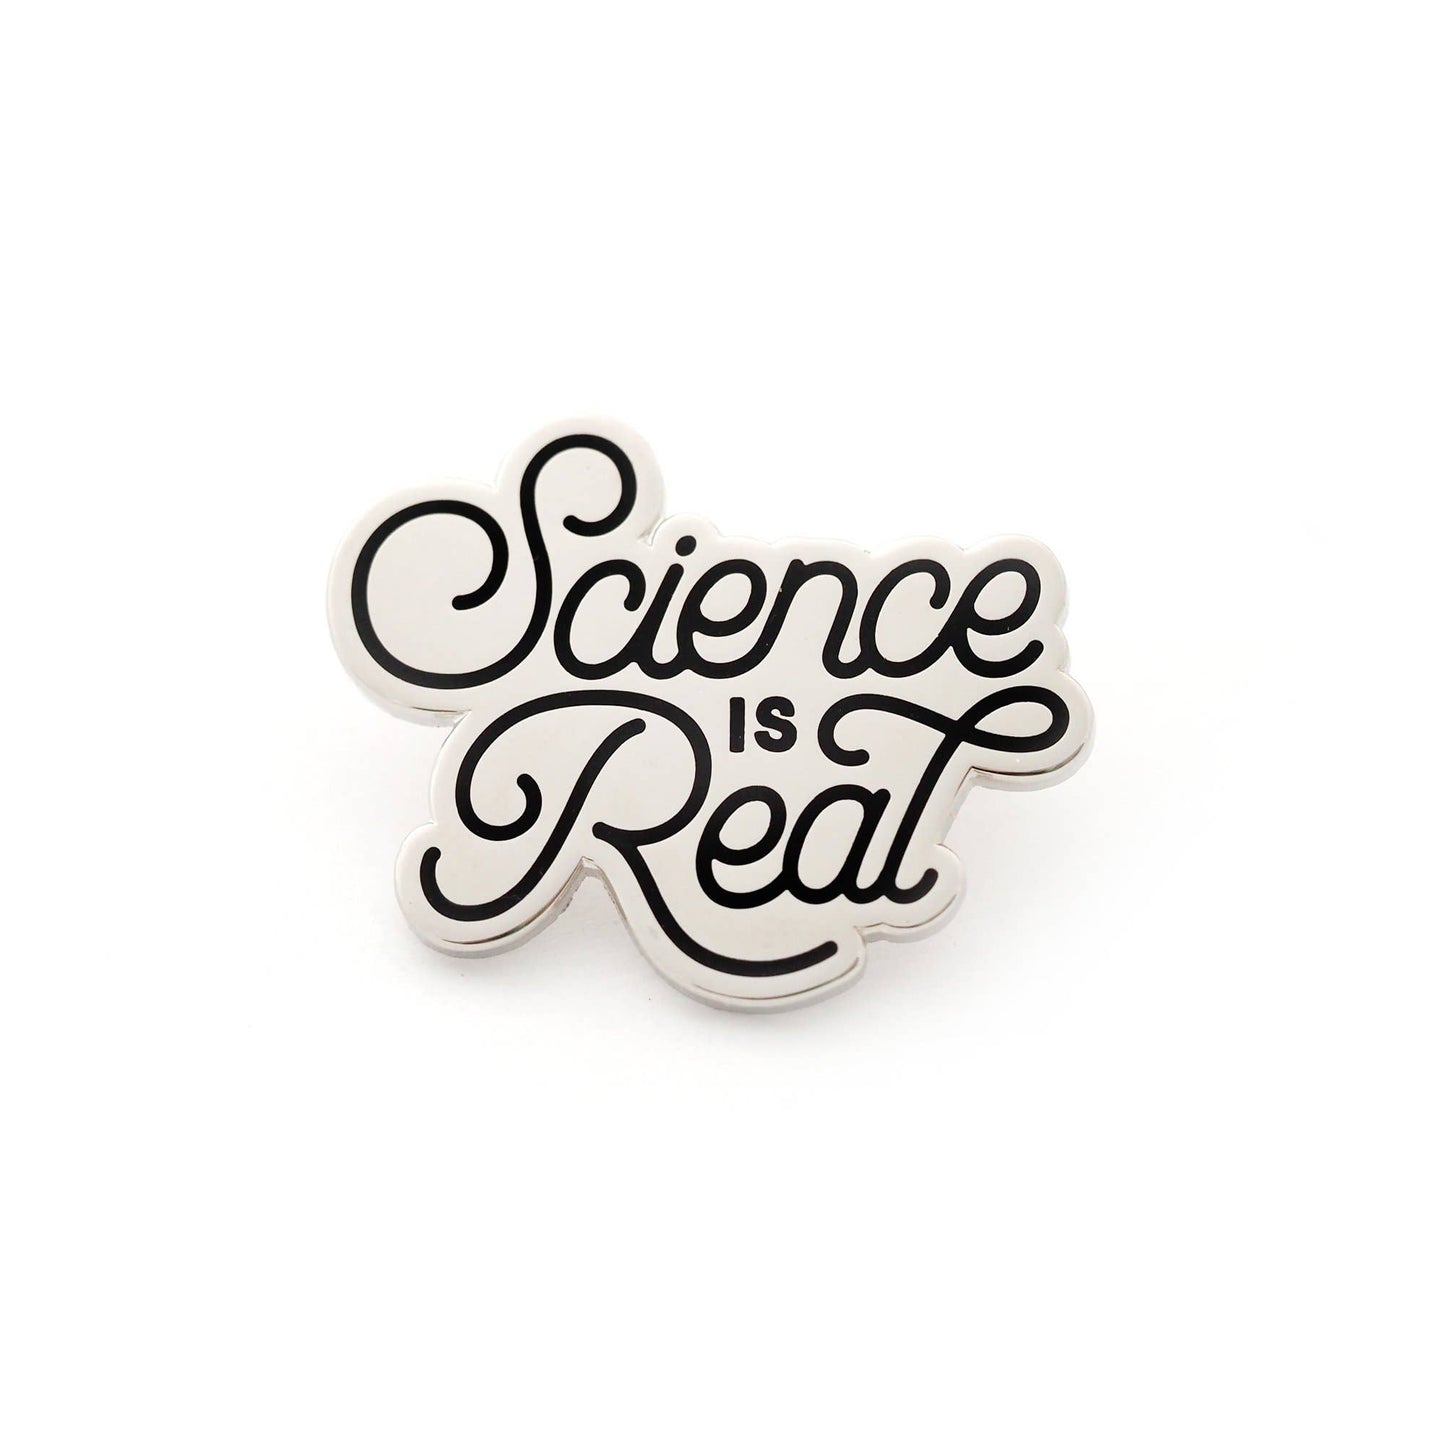 Science is Real - Enamel Pin